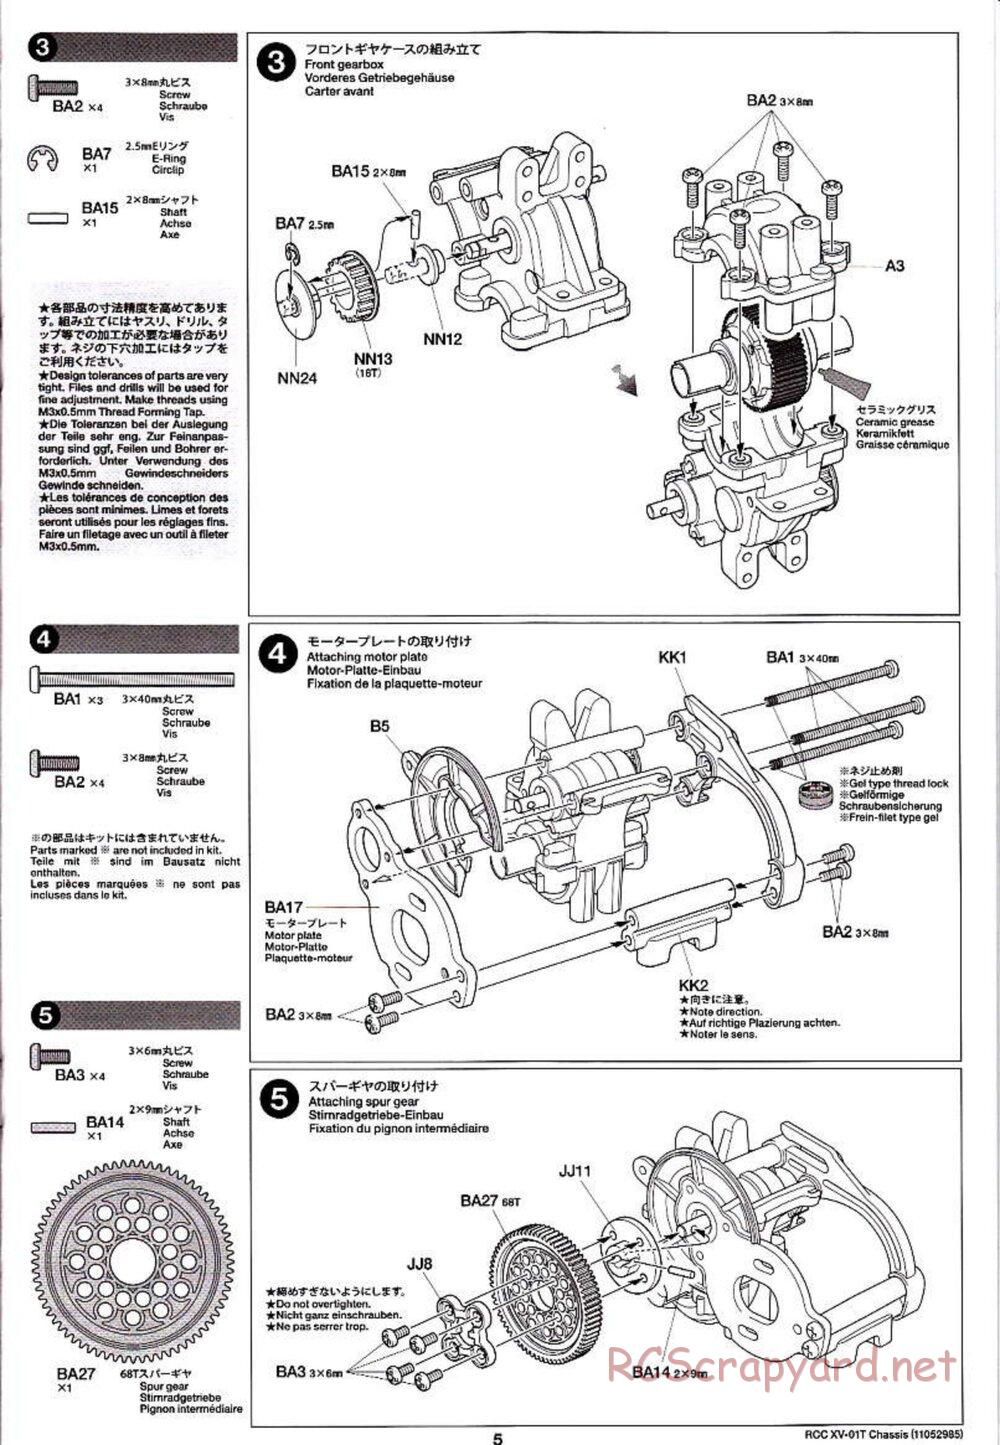 Tamiya - XV-01T Chassis - Manual - Page 5